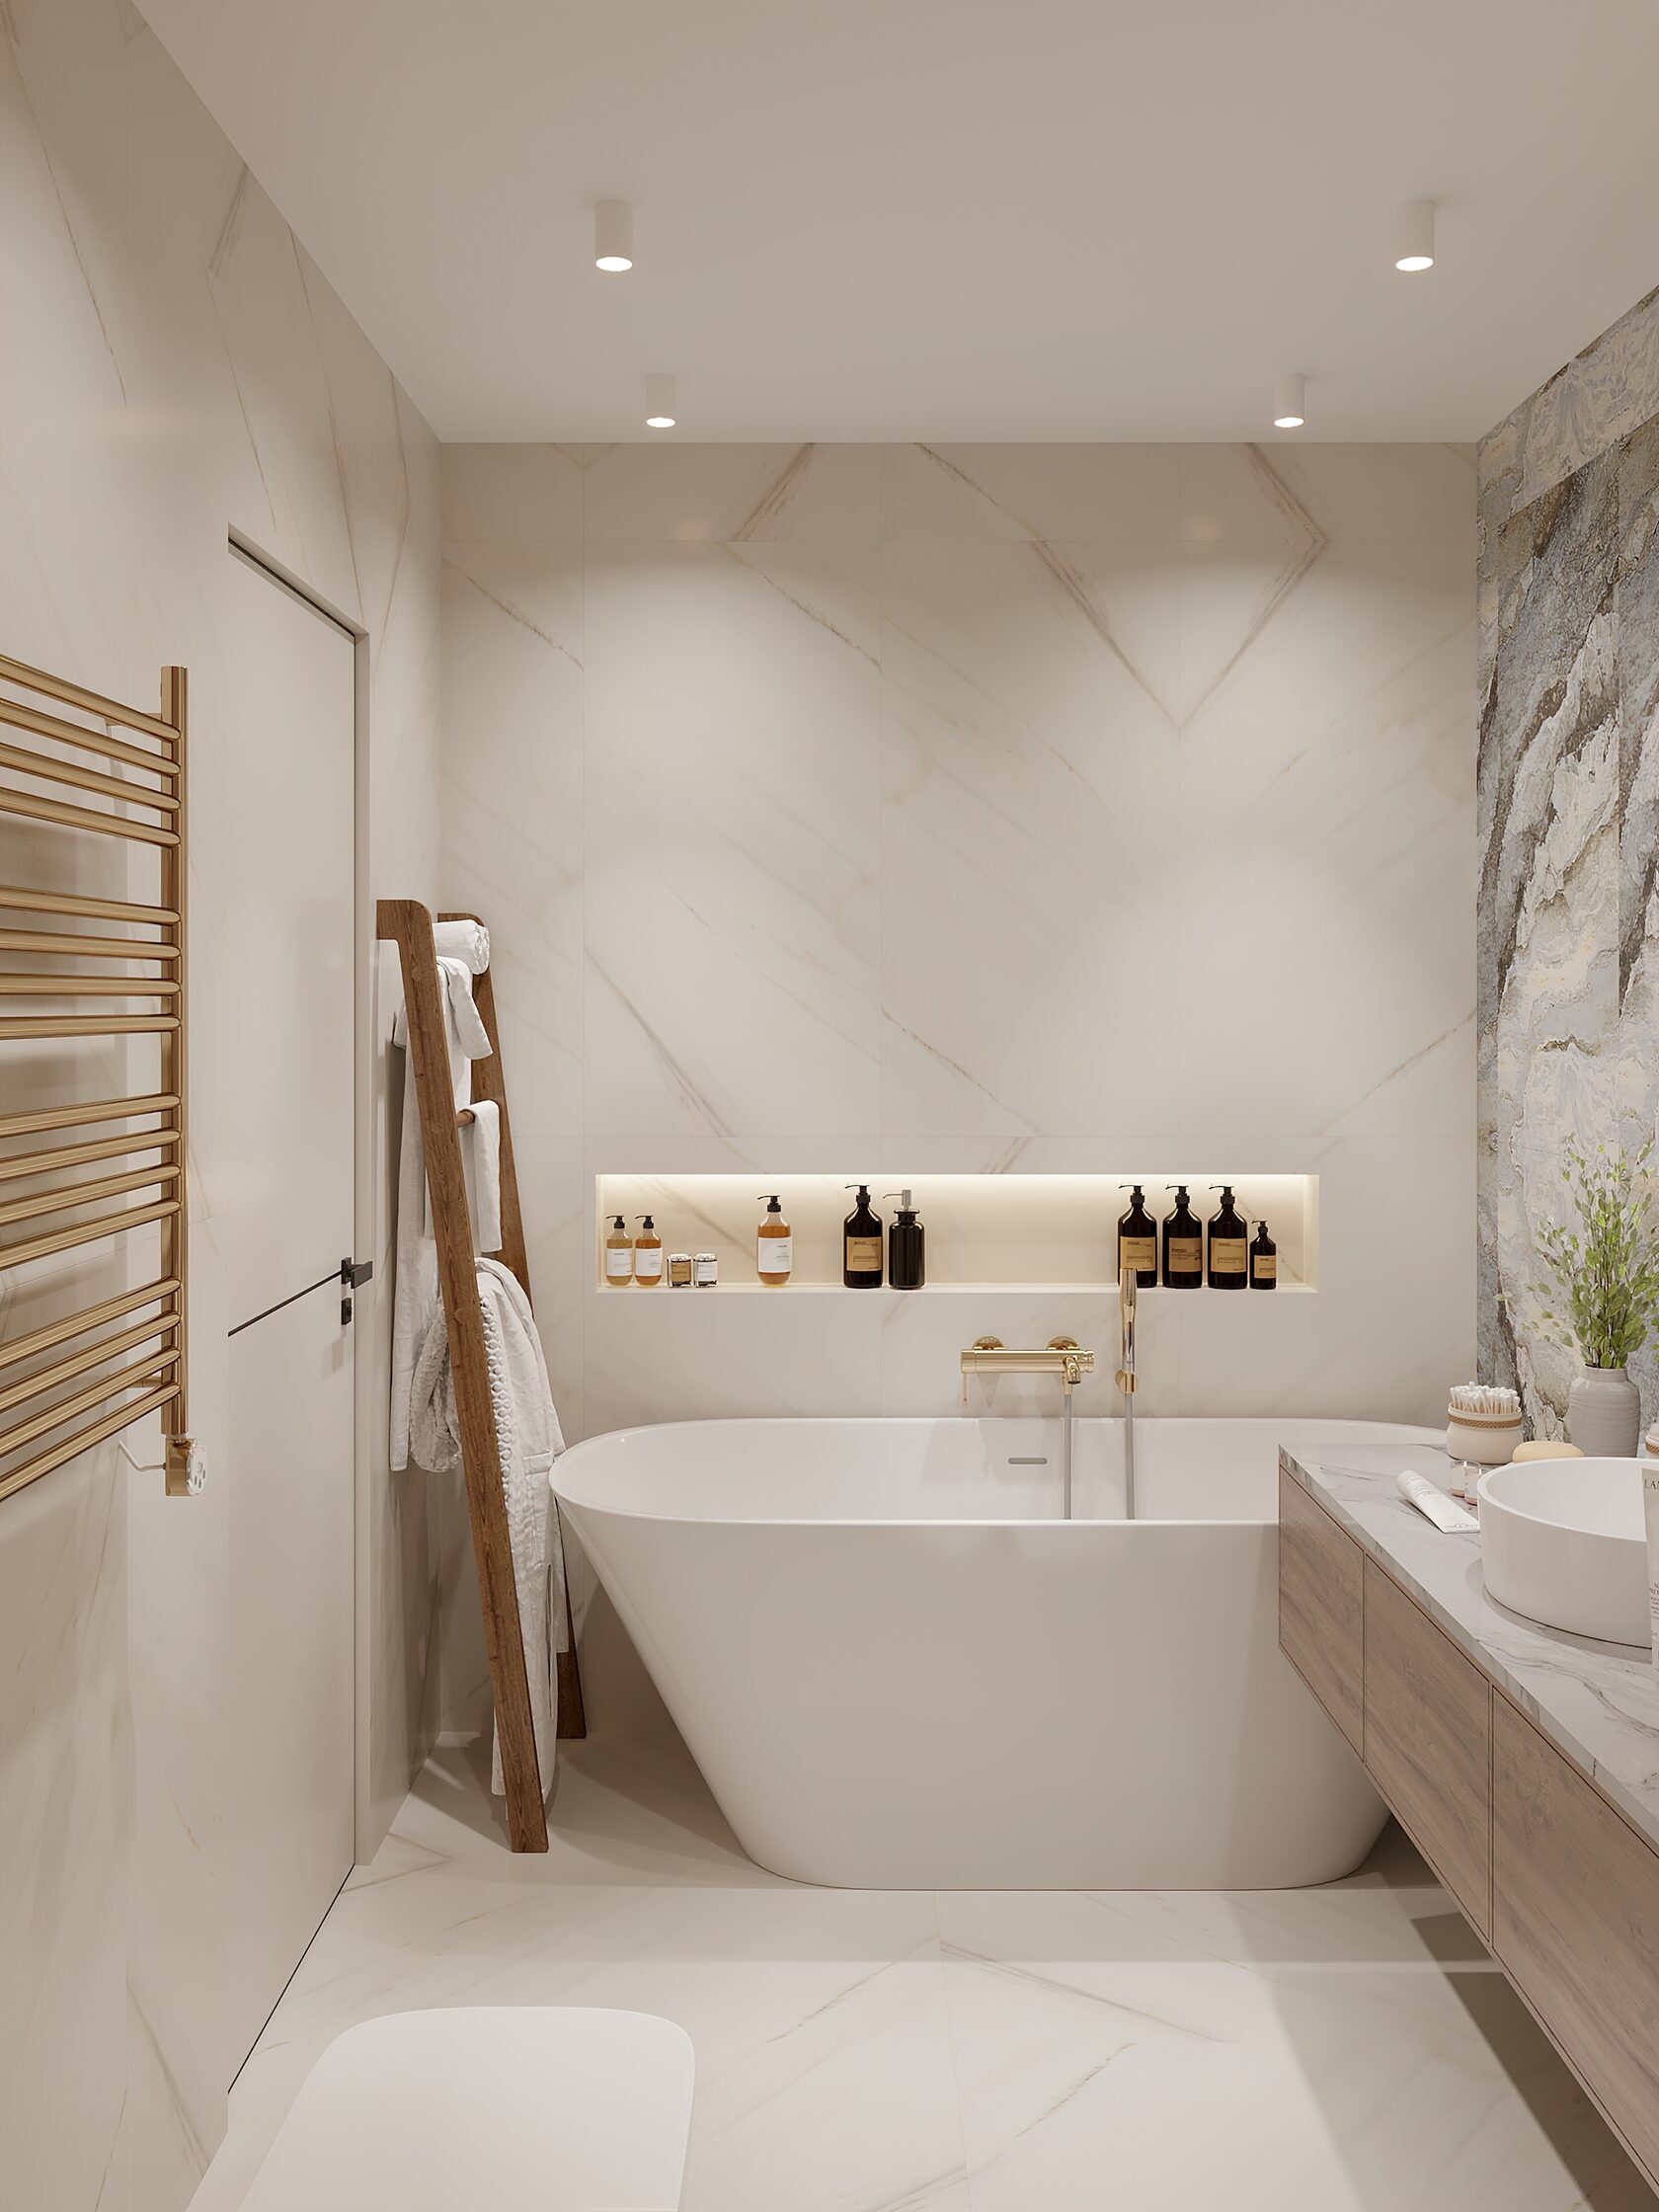 Маленькие ванные комнаты: функциональность и эстетика. Часть 2